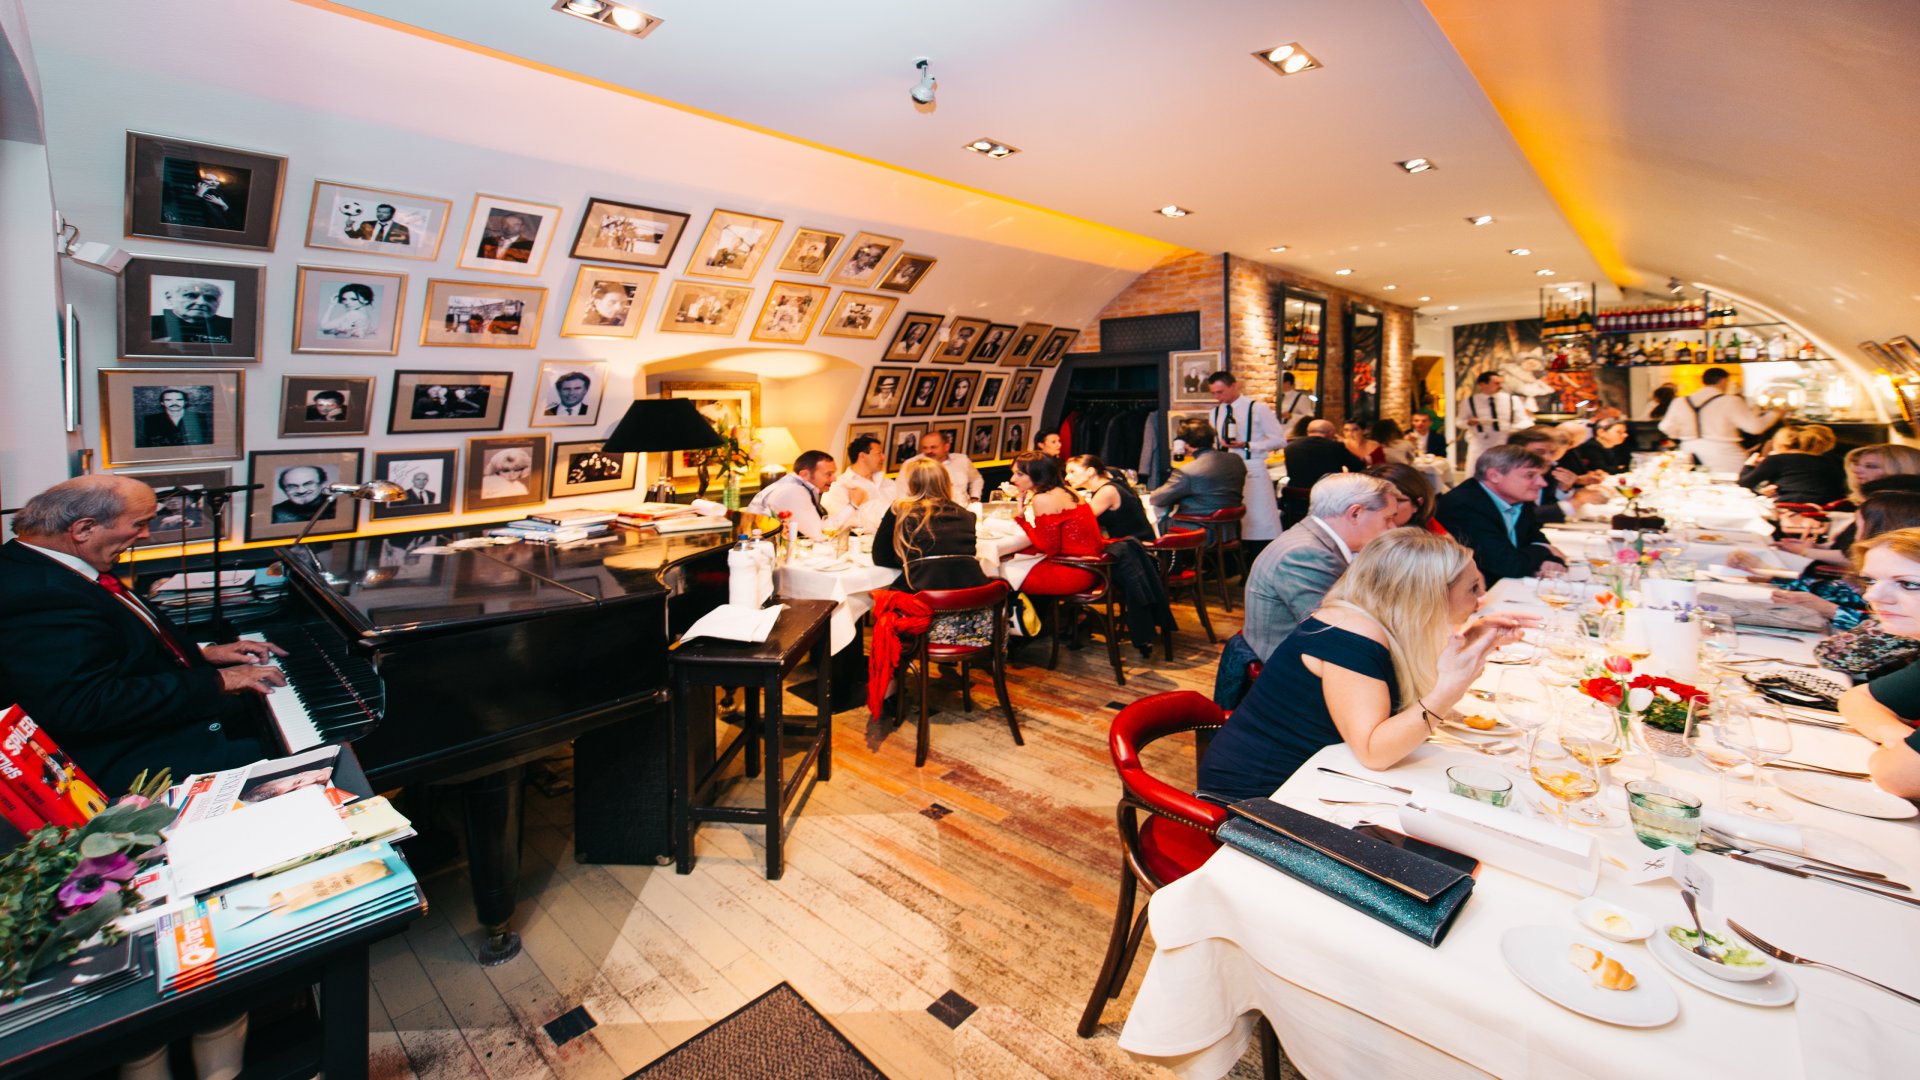 Budapest romantikus étterme: fedezd fel a Pierrot lezseren elegáns hangulatát!